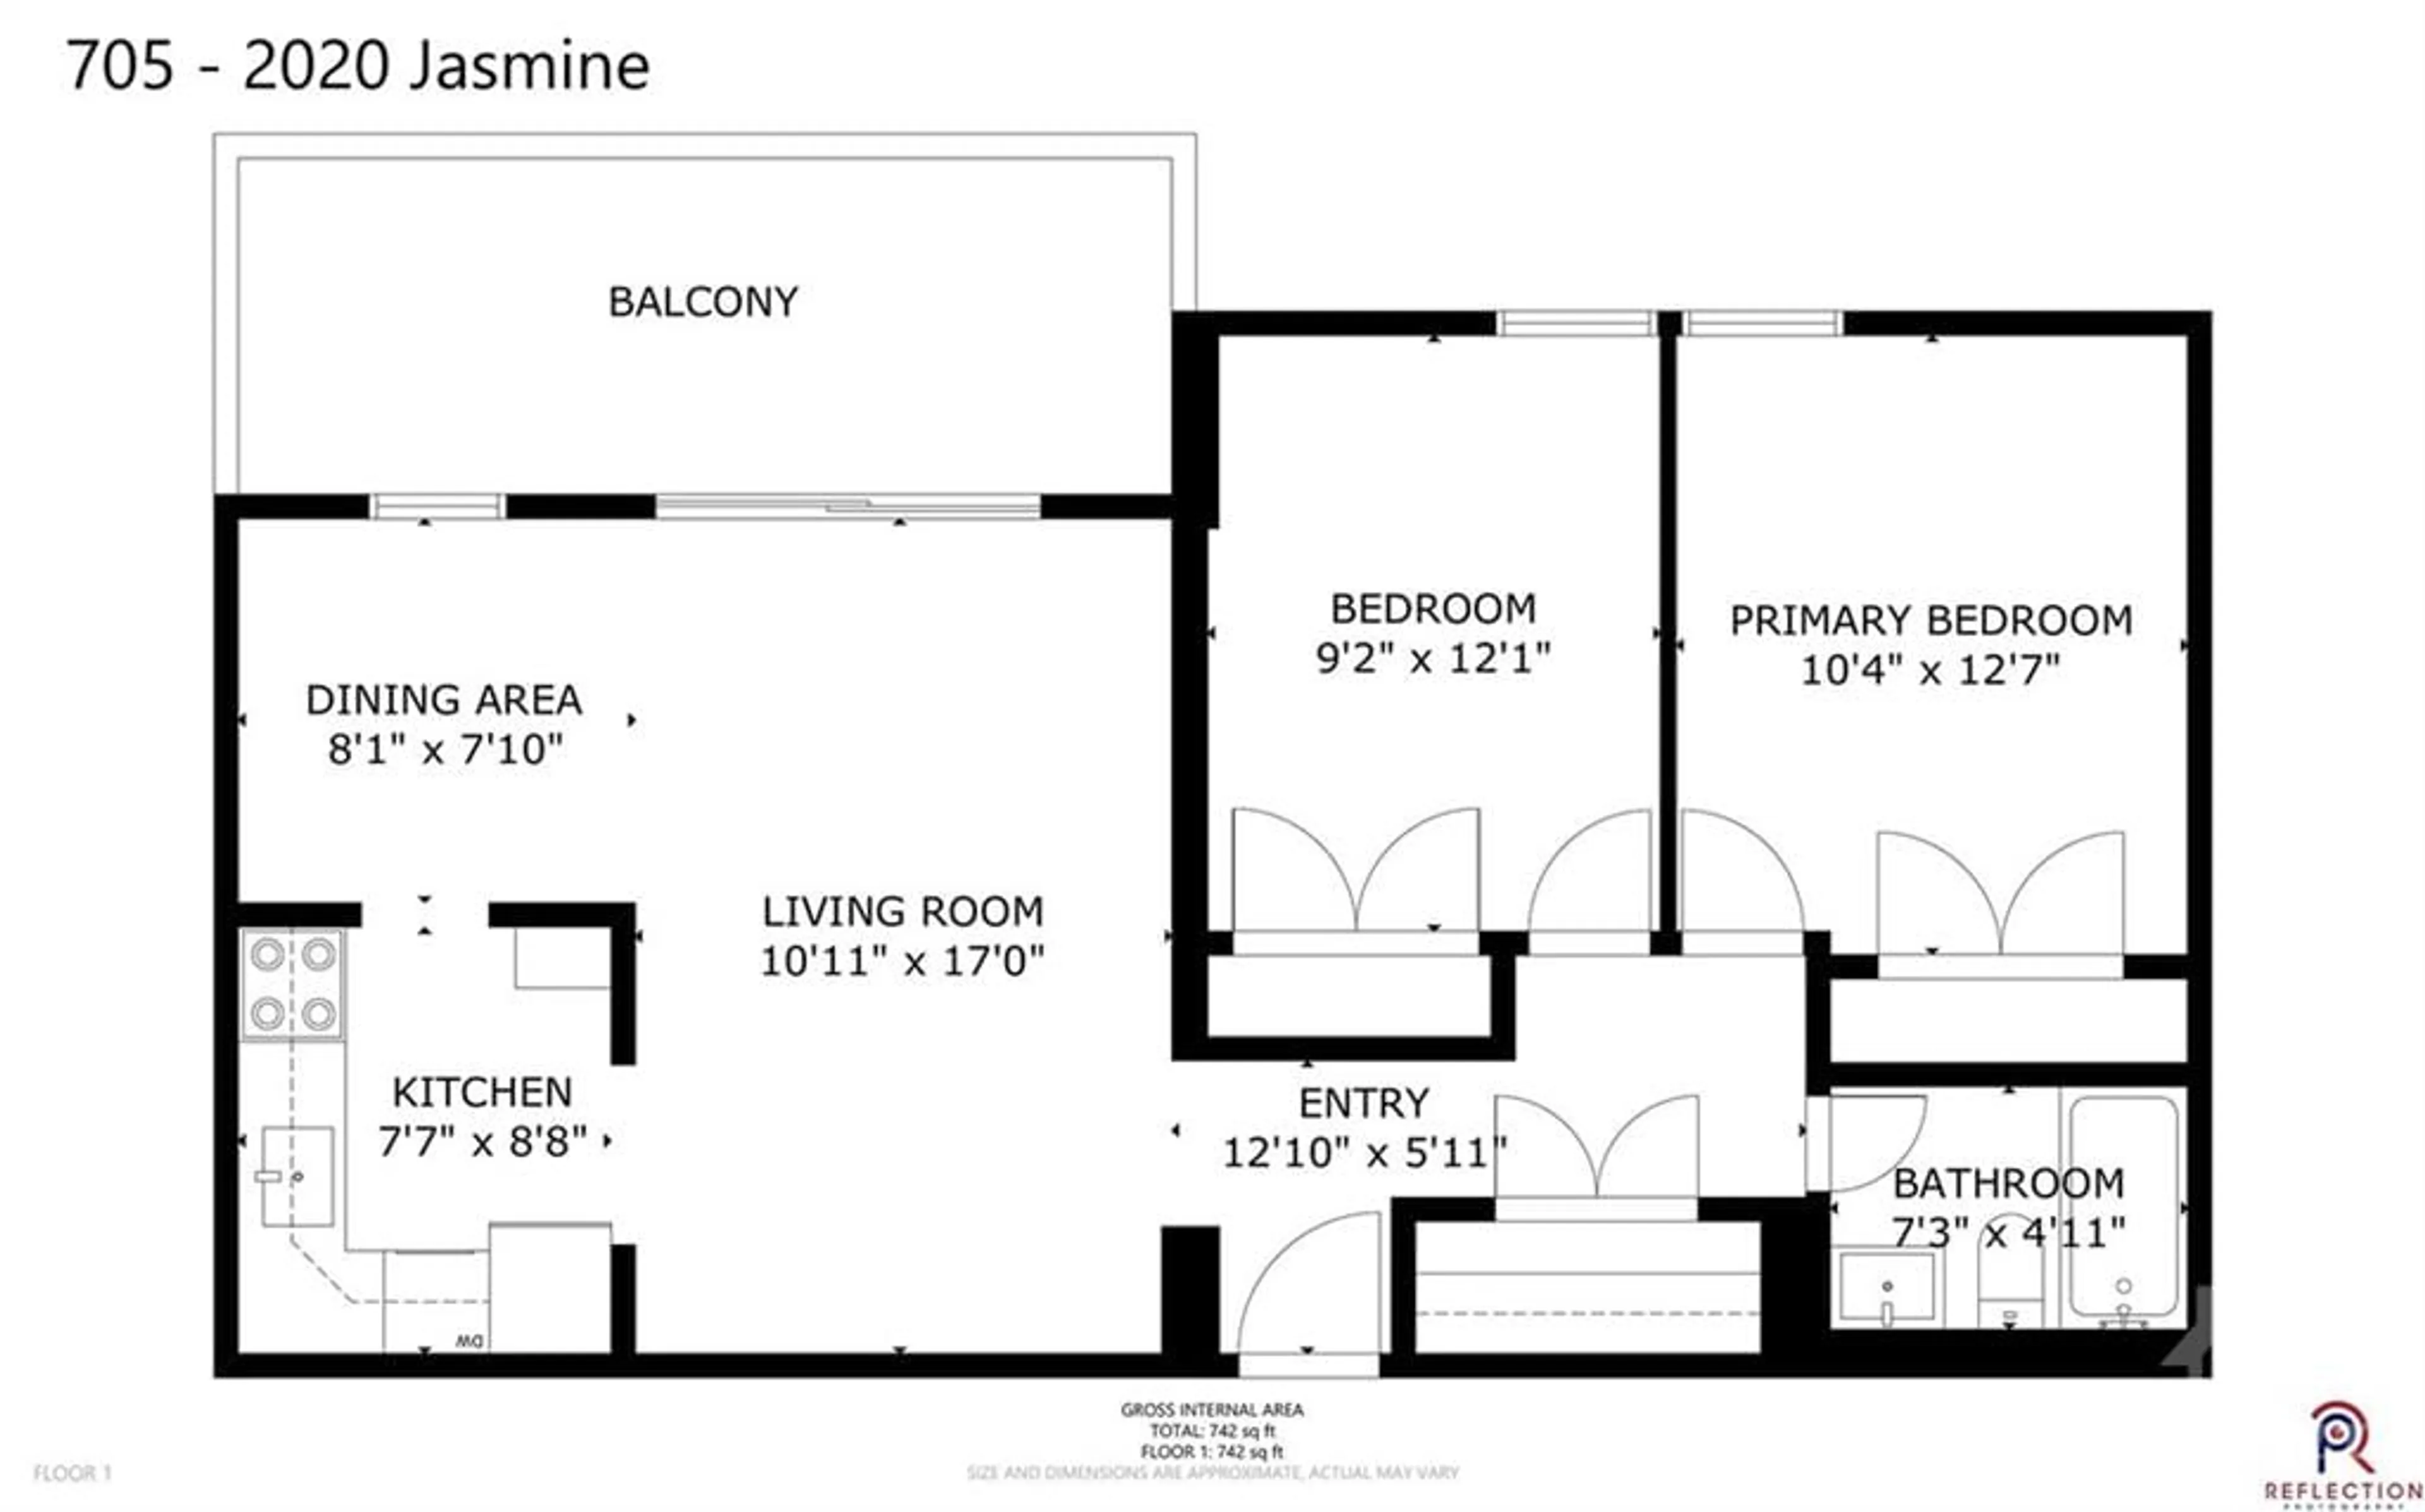 Floor plan for 2020 JASMINE Cres #705, Ottawa Ontario K1J 8K5